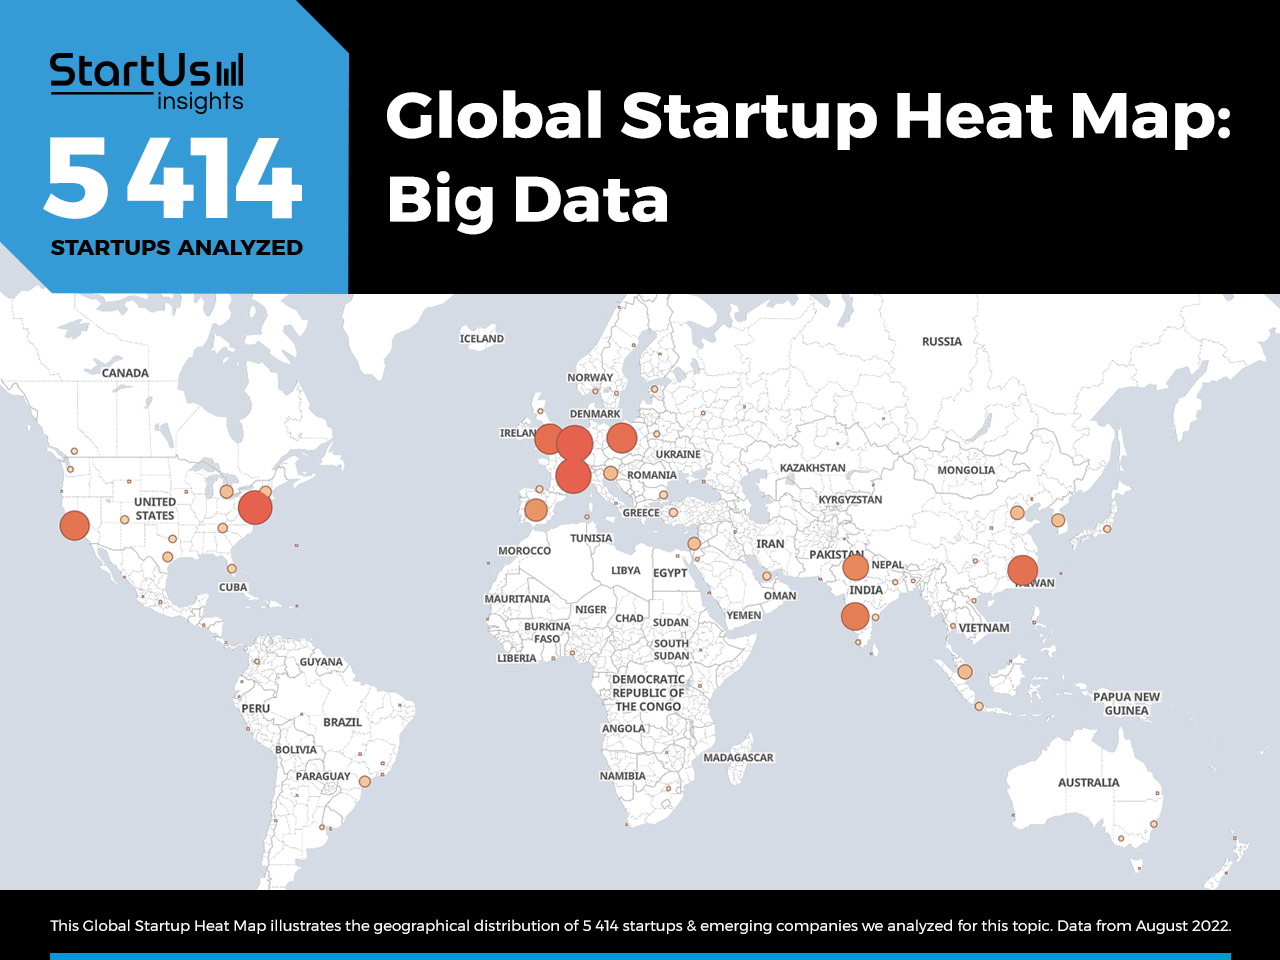 Big-Data-startups-Heat-Map-StartUs-Insights-noresize